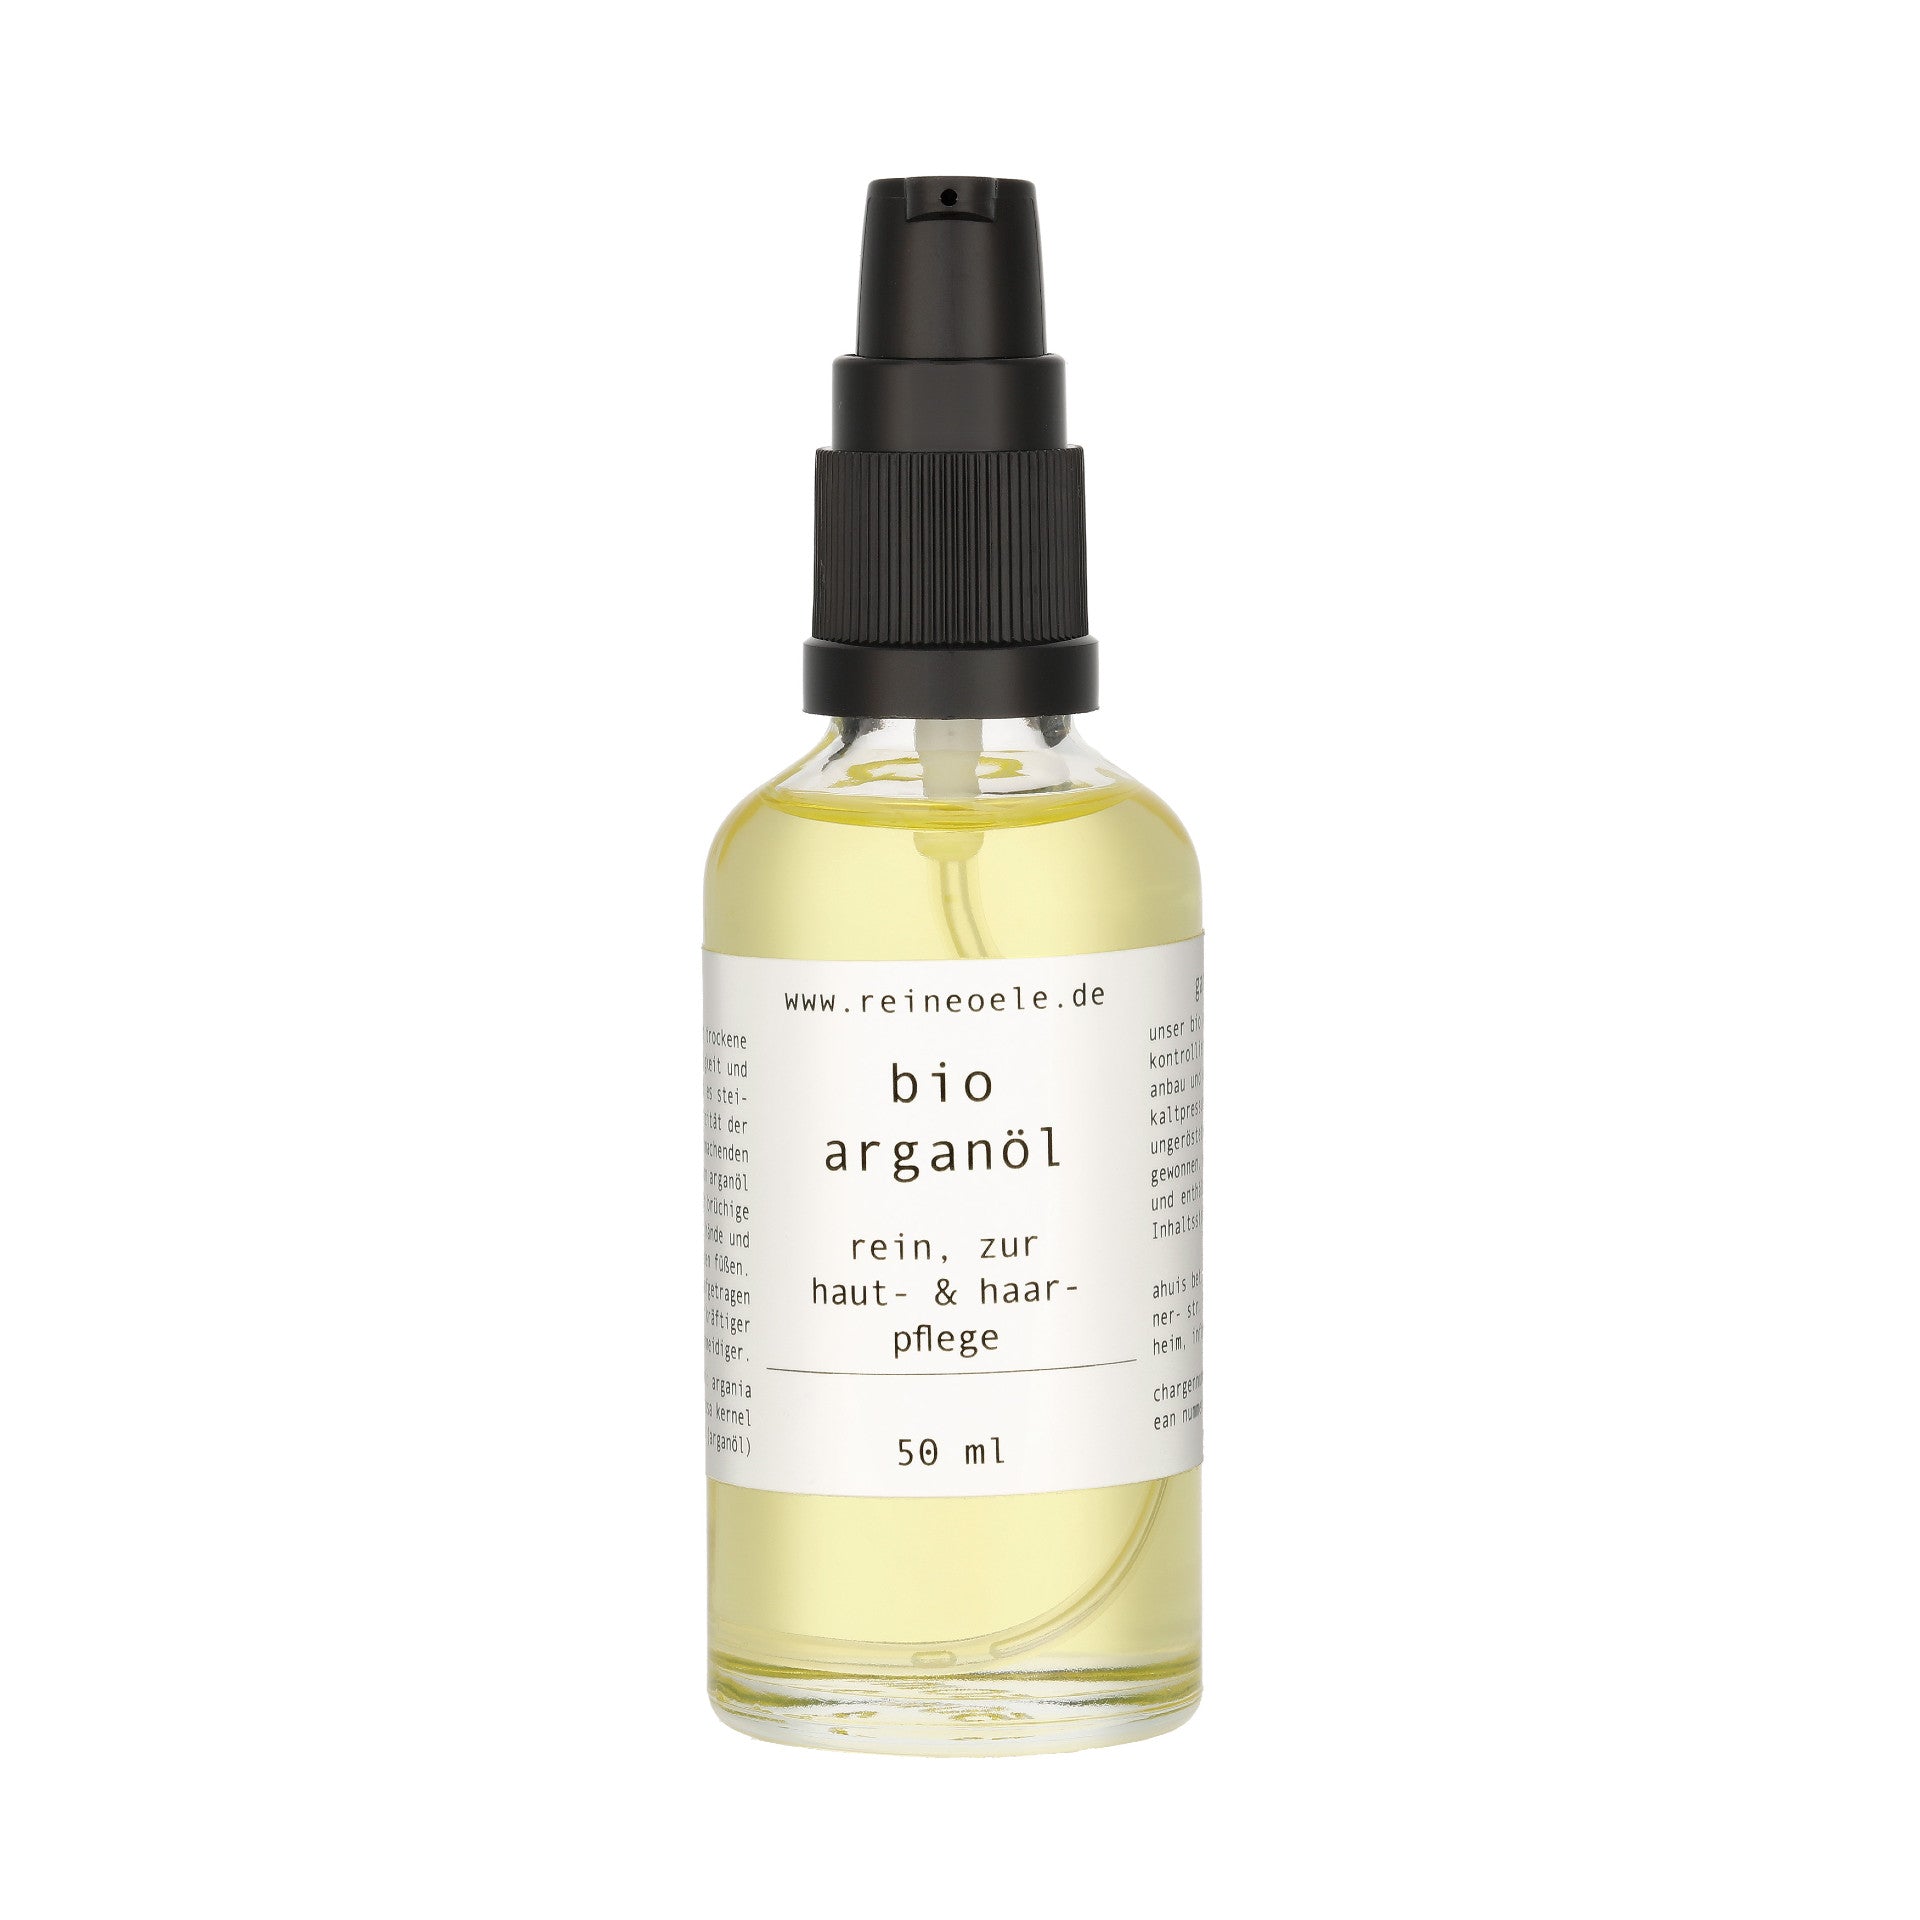 Bio Arganöl aus Marokko – natürliche Haut- und Haarpflege – vegan - mild desodoriert - reineoele